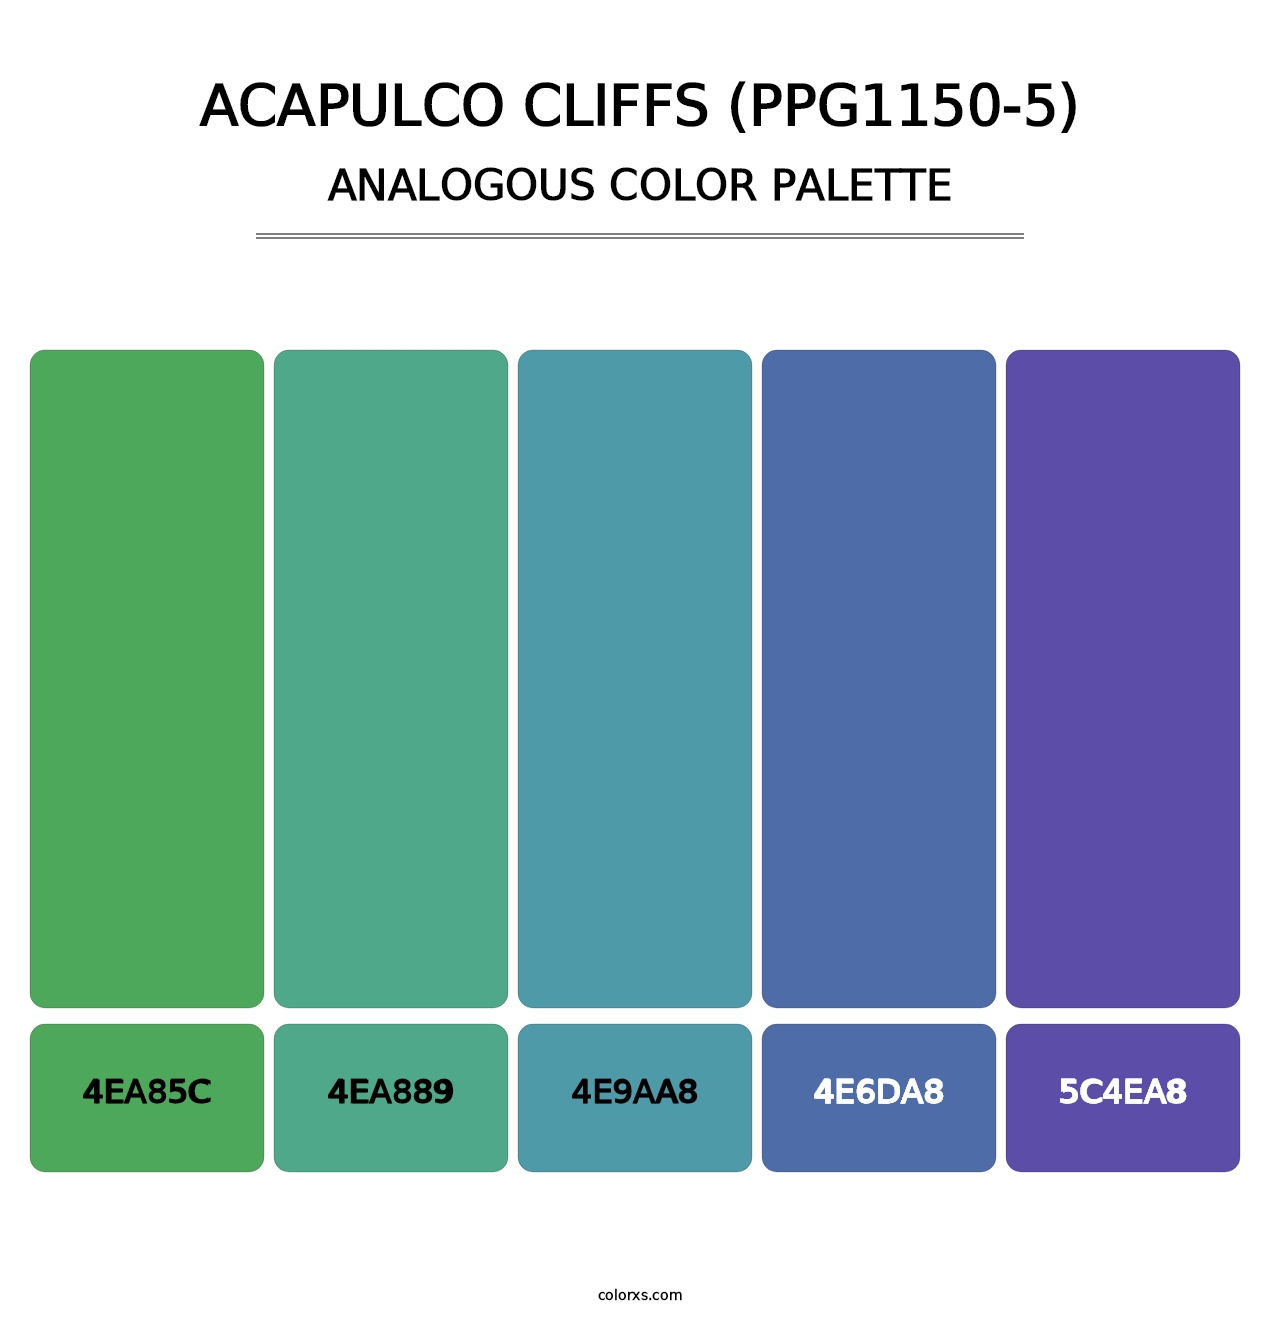 Acapulco Cliffs (PPG1150-5) - Analogous Color Palette